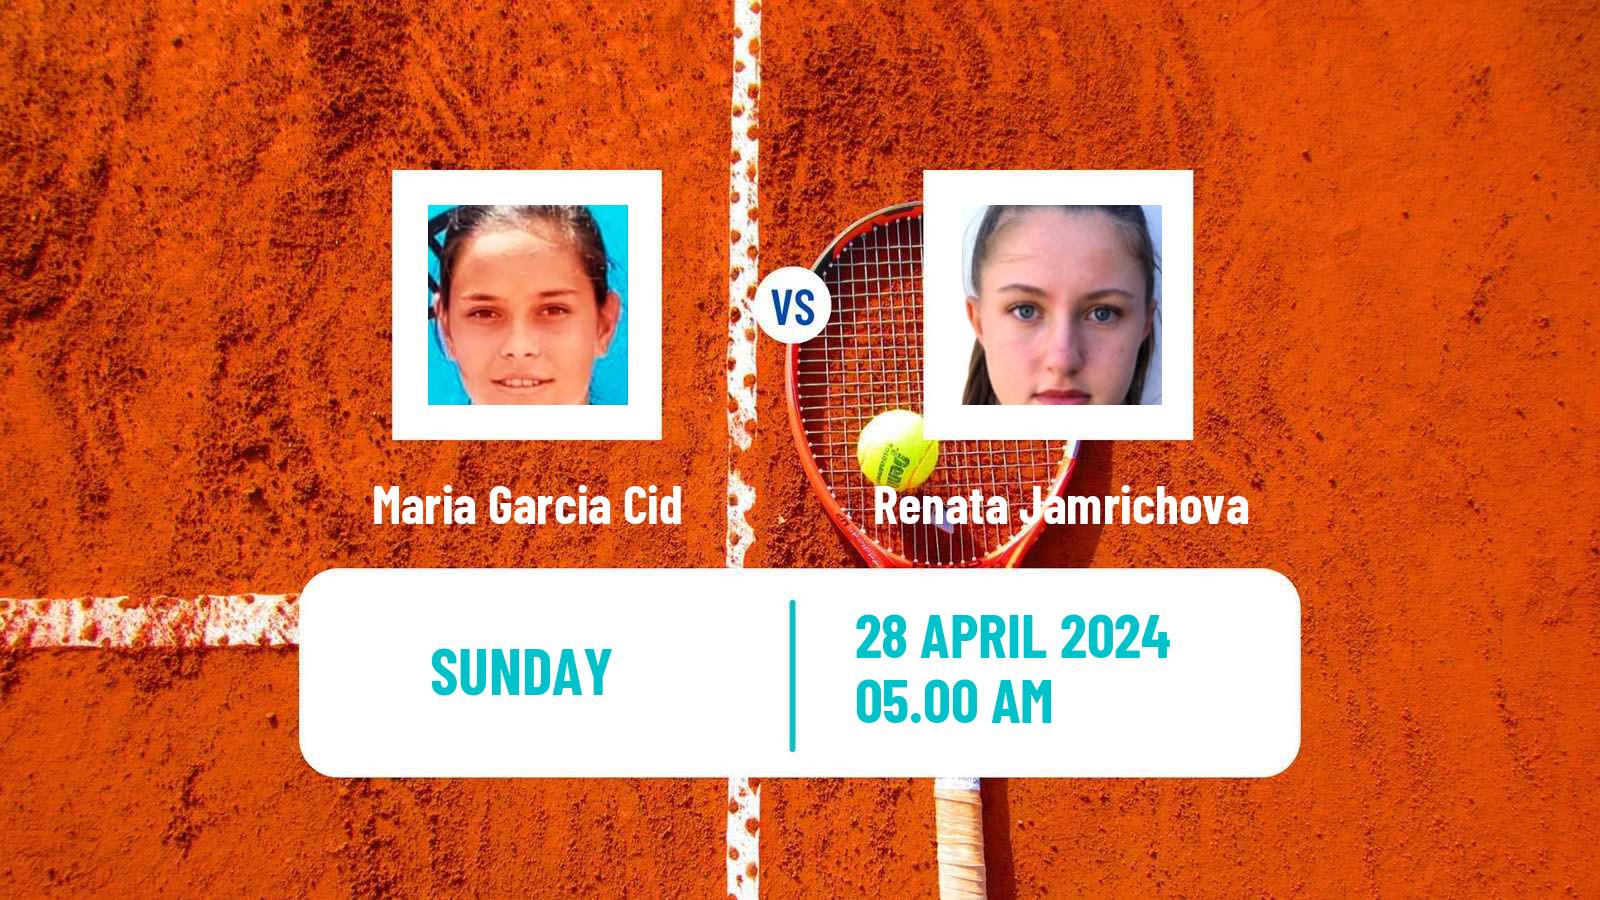 Tennis ITF W15 Telde 4 Women Maria Garcia Cid - Renata Jamrichova